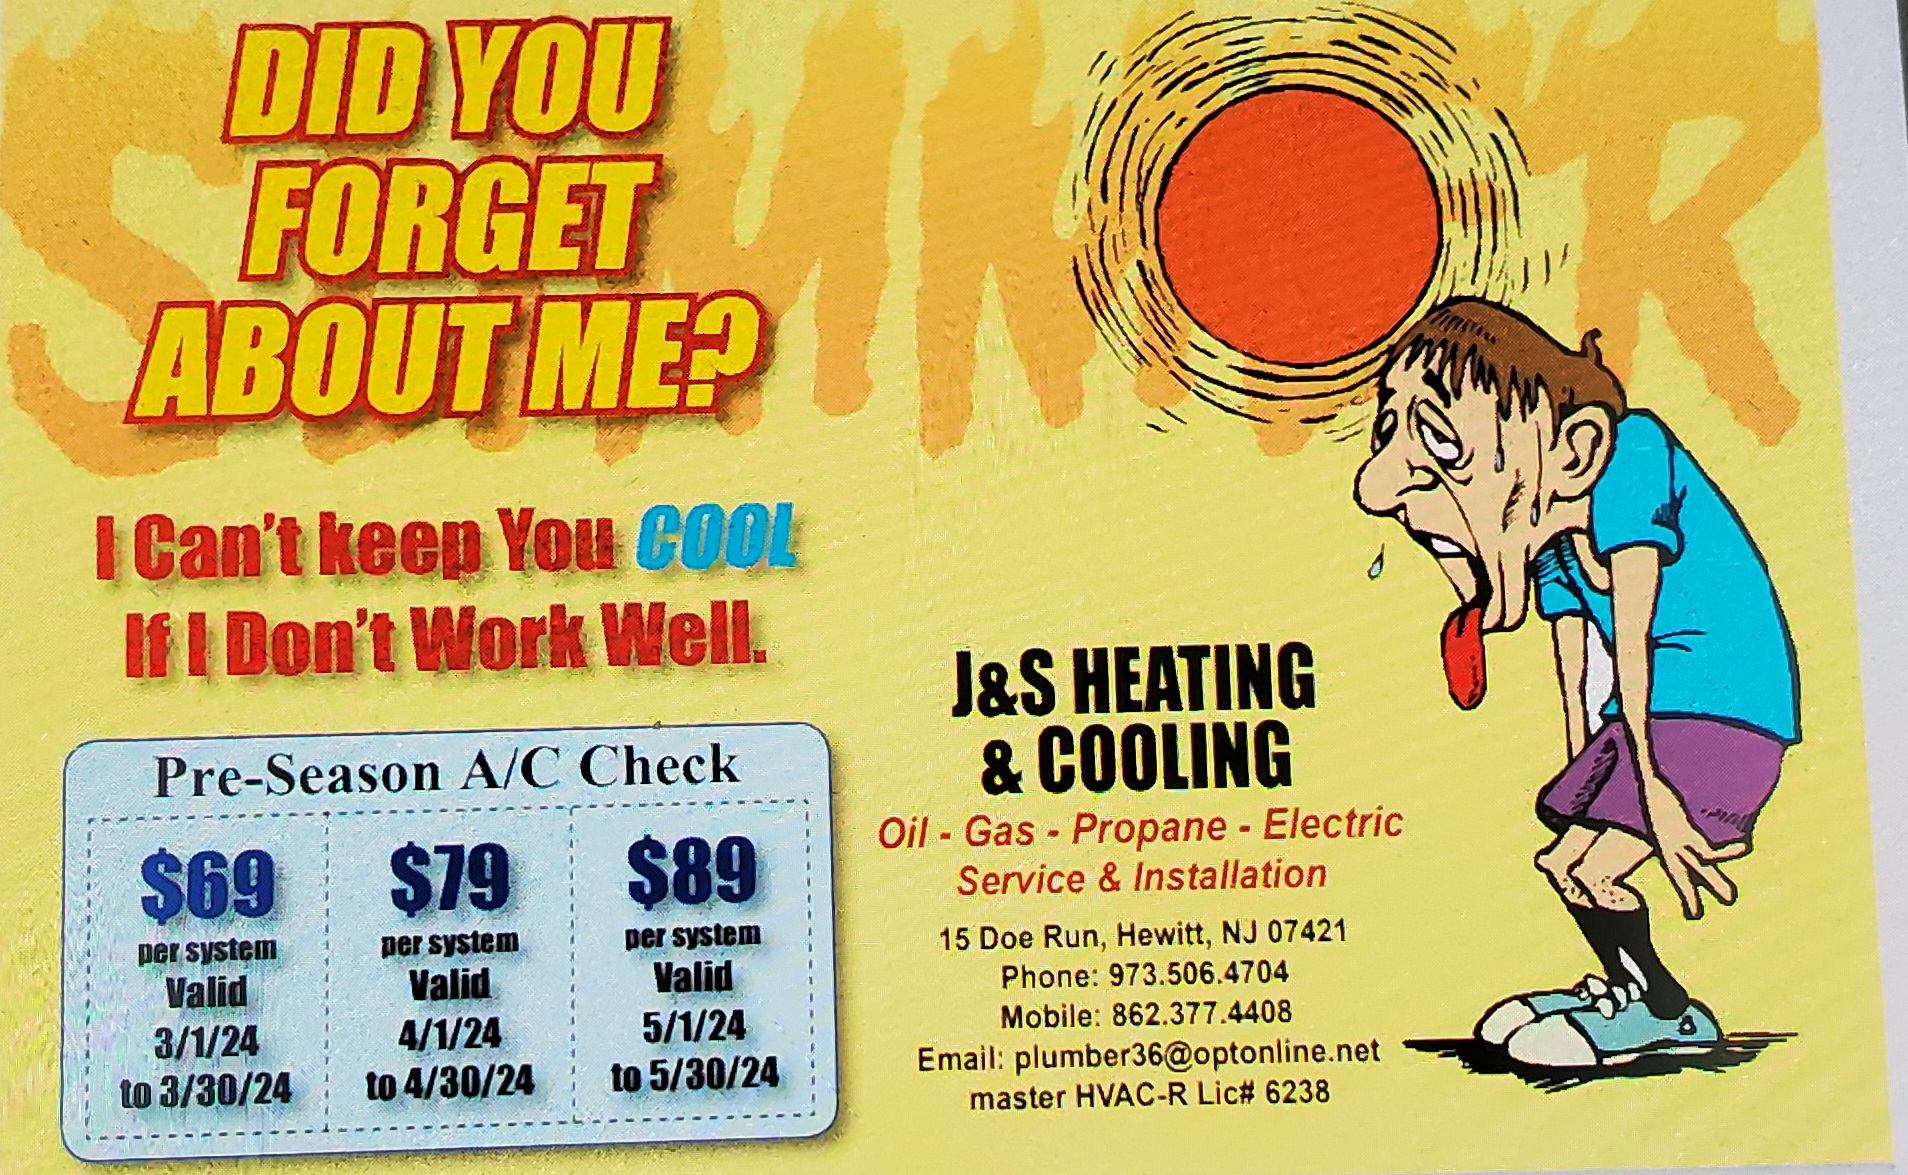 J&S heating & cooling 15 Doe Run, Hewitt New Jersey 07421